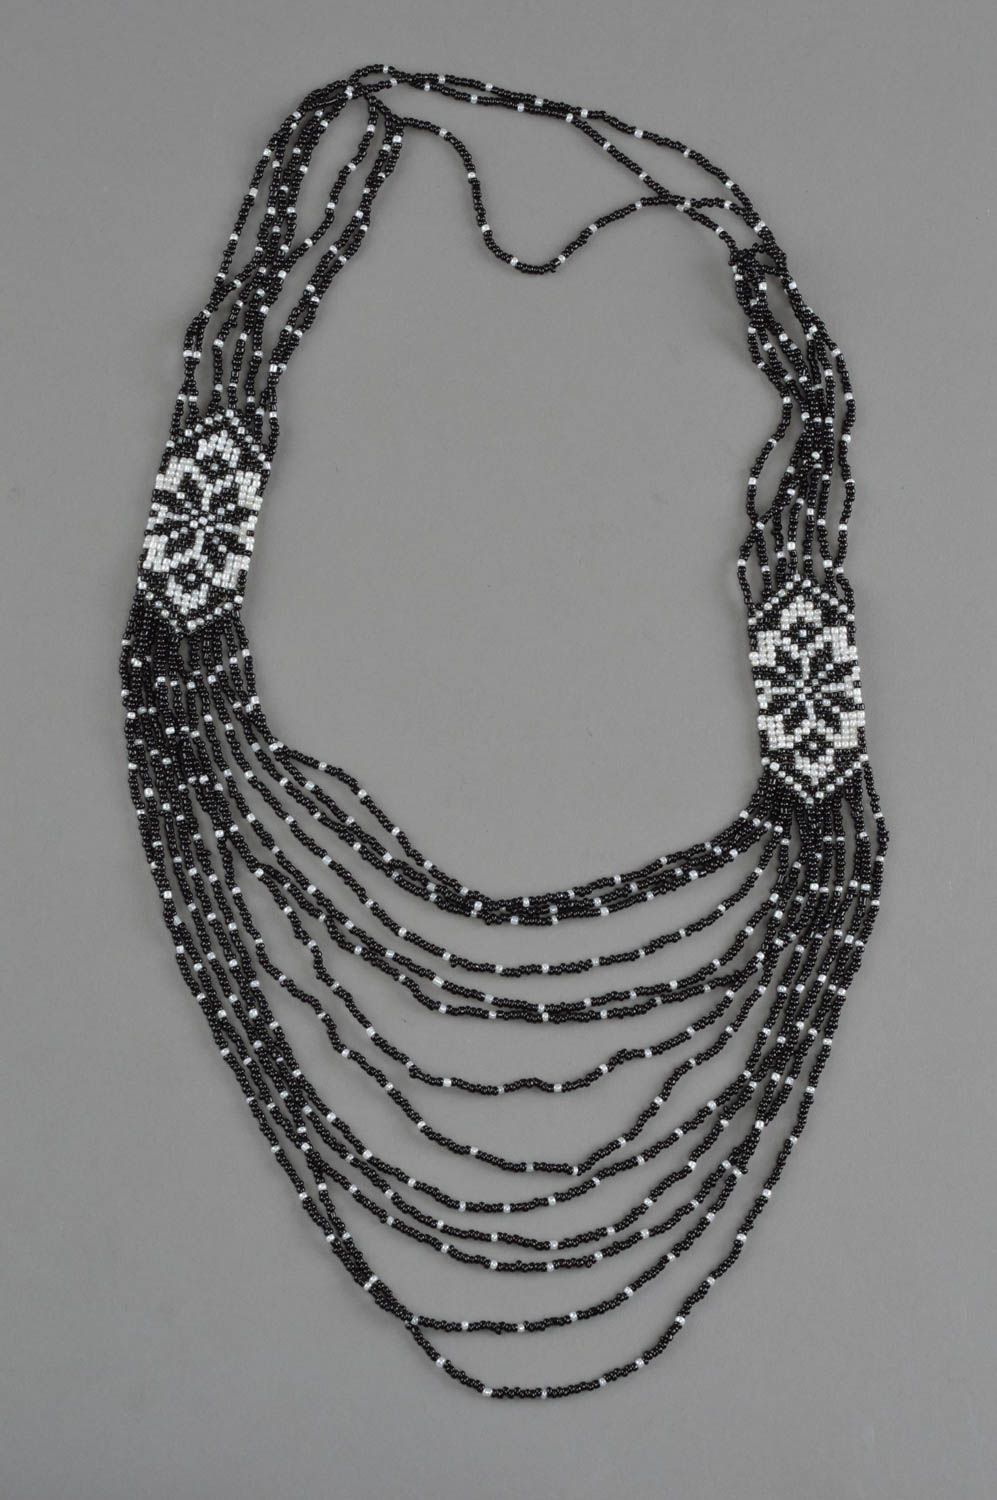 Ожерелье из бисера черно-белое красивое многорядное массивное ручной работы фото 2